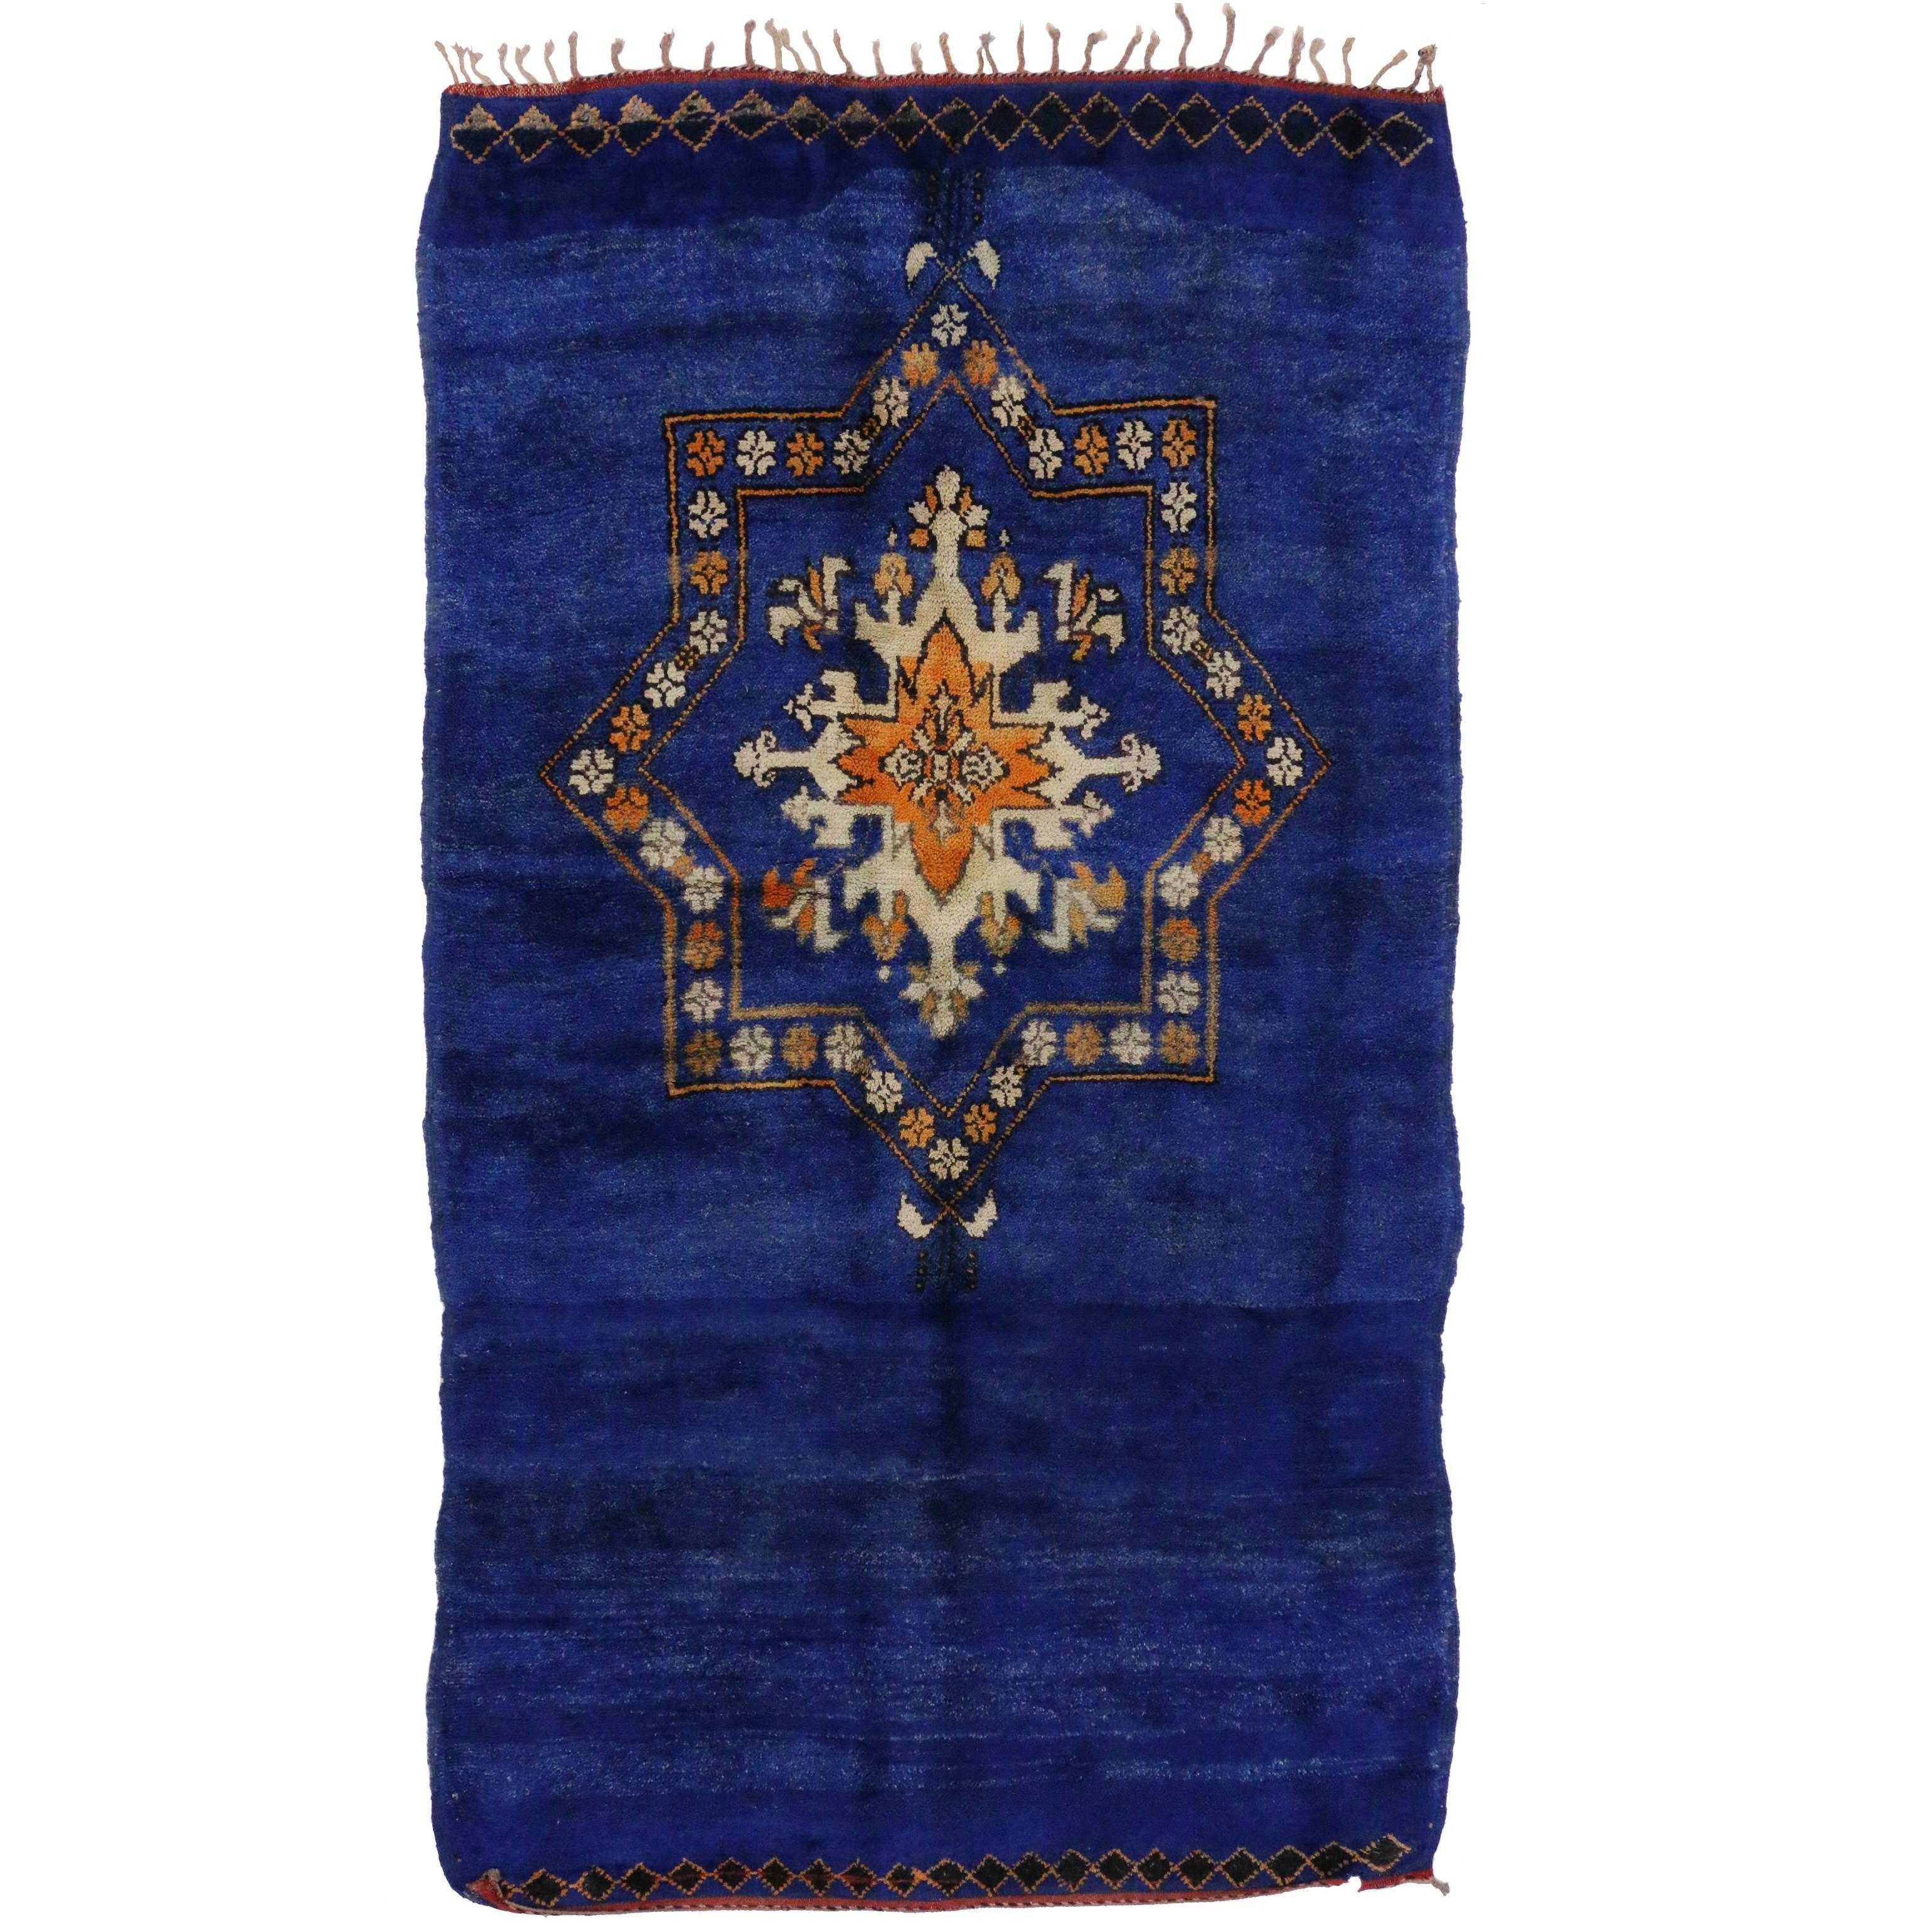 Vintage Berber Moroccan Rug in Cobalt Blue with Modern Tribal Design